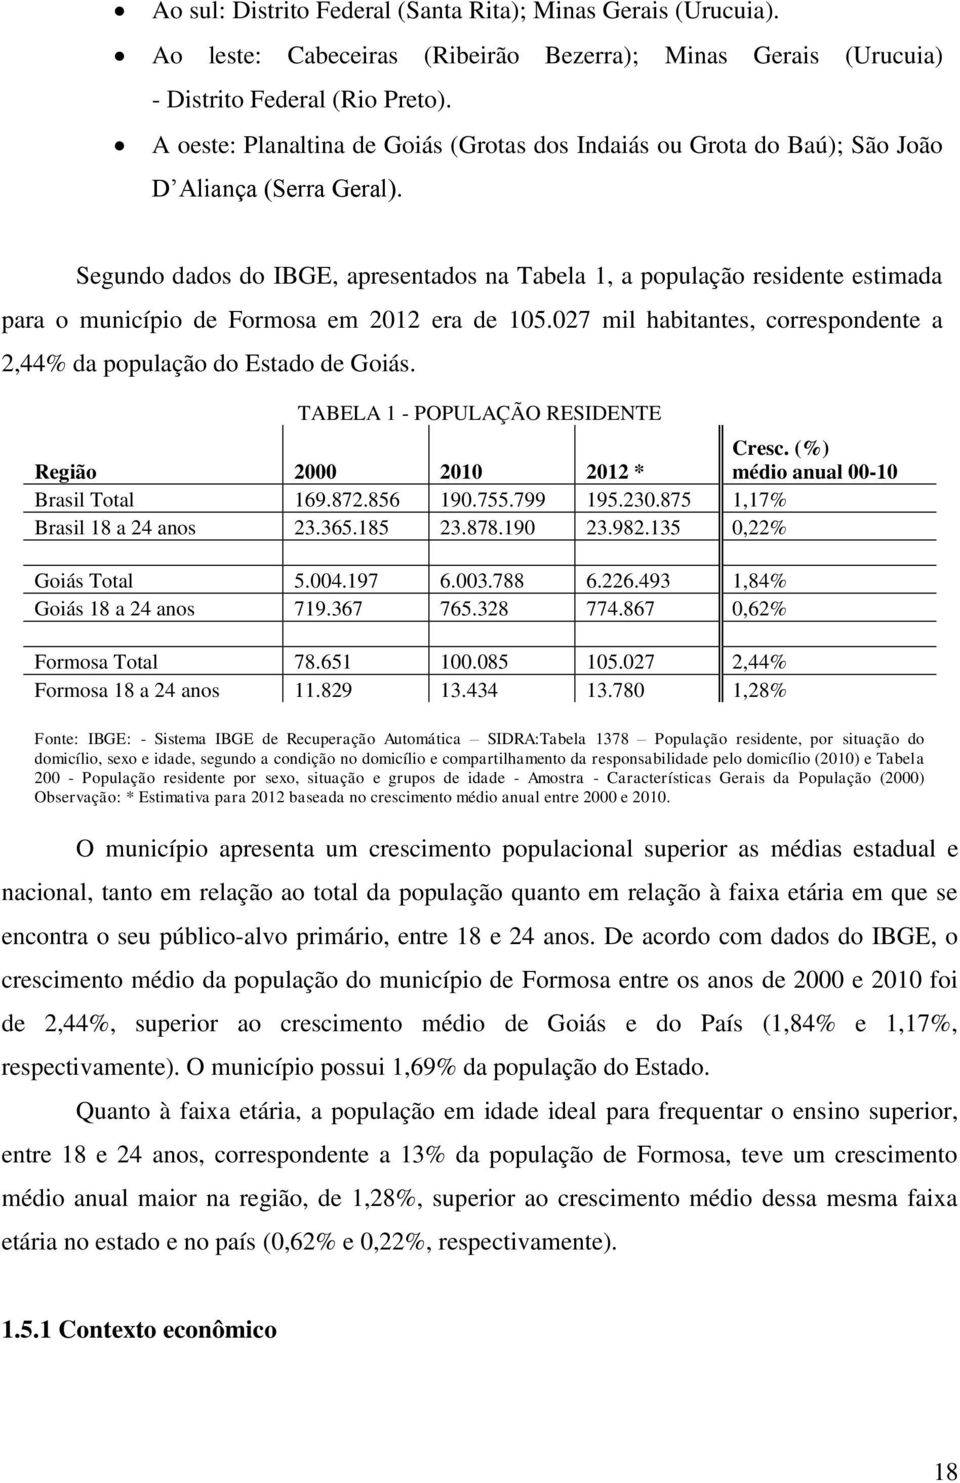 Segundo dados do IBGE, apresentados na Tabela 1, a população residente estimada para o município de Formosa em 2012 era de 105.